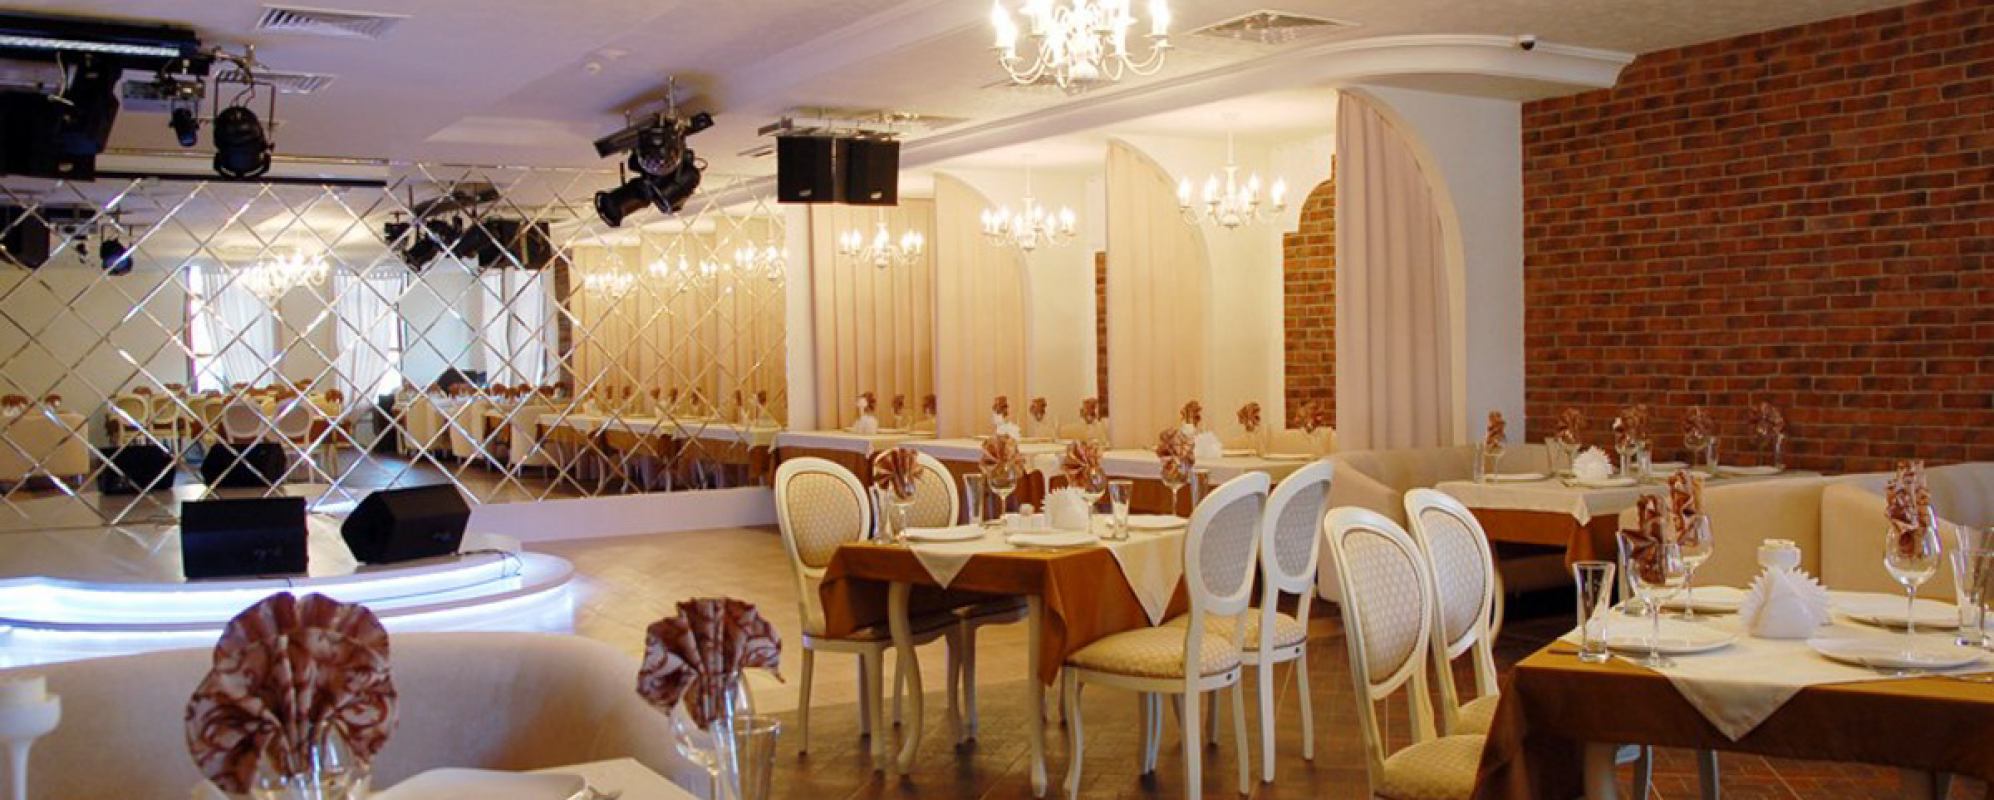 Фотографии банкетного зала Зал ресторана Династия